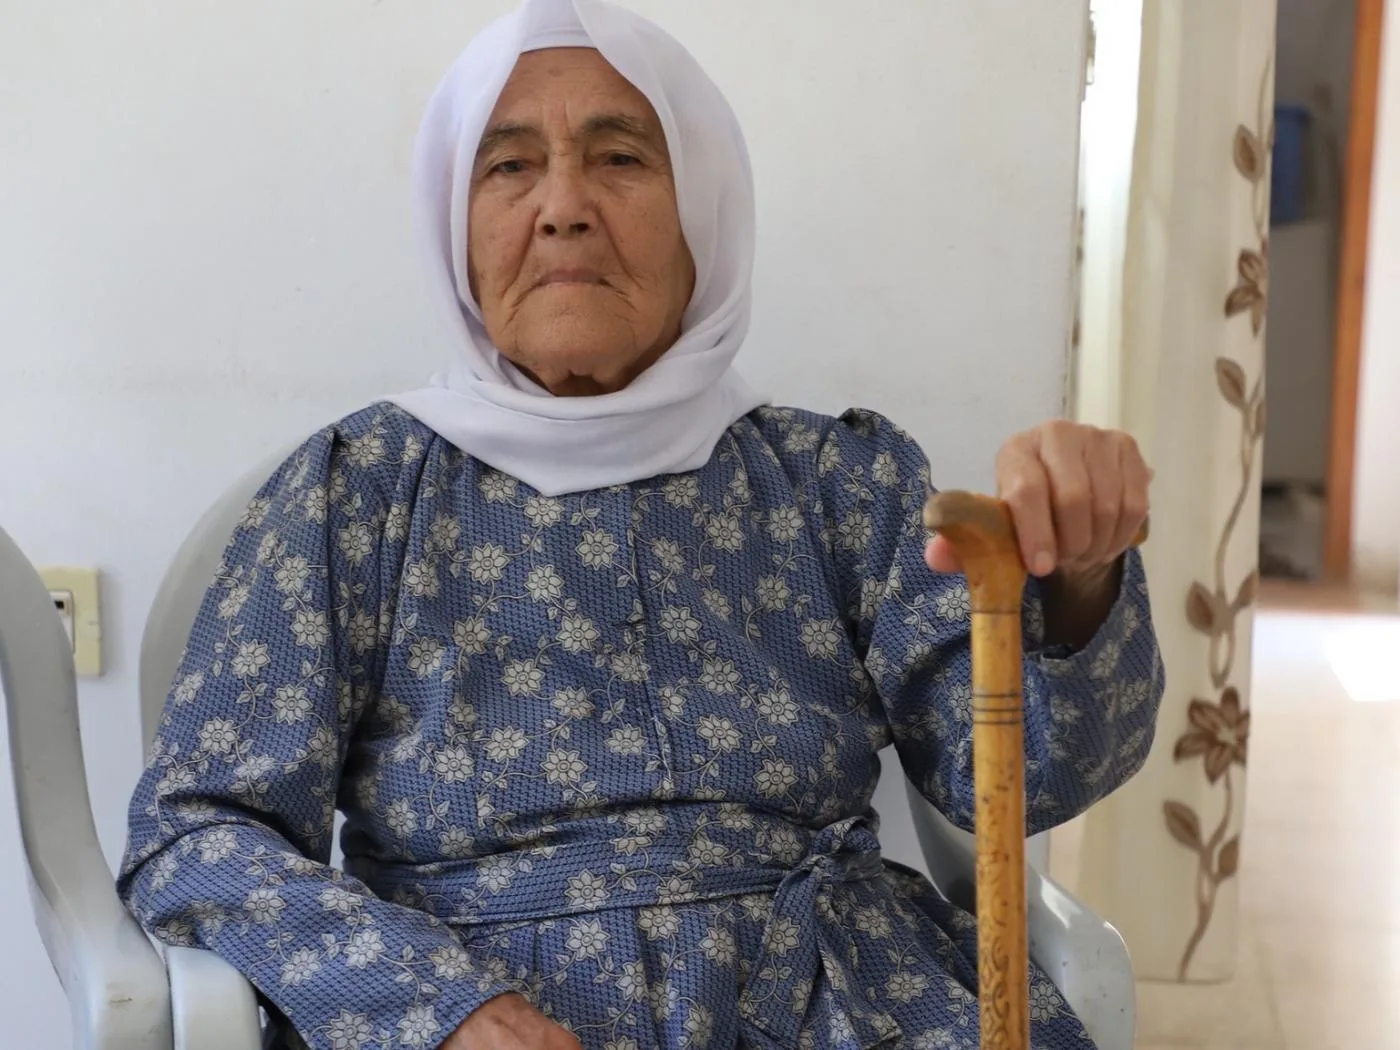 خسرت خضرة أبو سريع - 84 عامًا - منزلها في مخيم جنين مرتين بعد هدم الجيش الإسرائيلي له